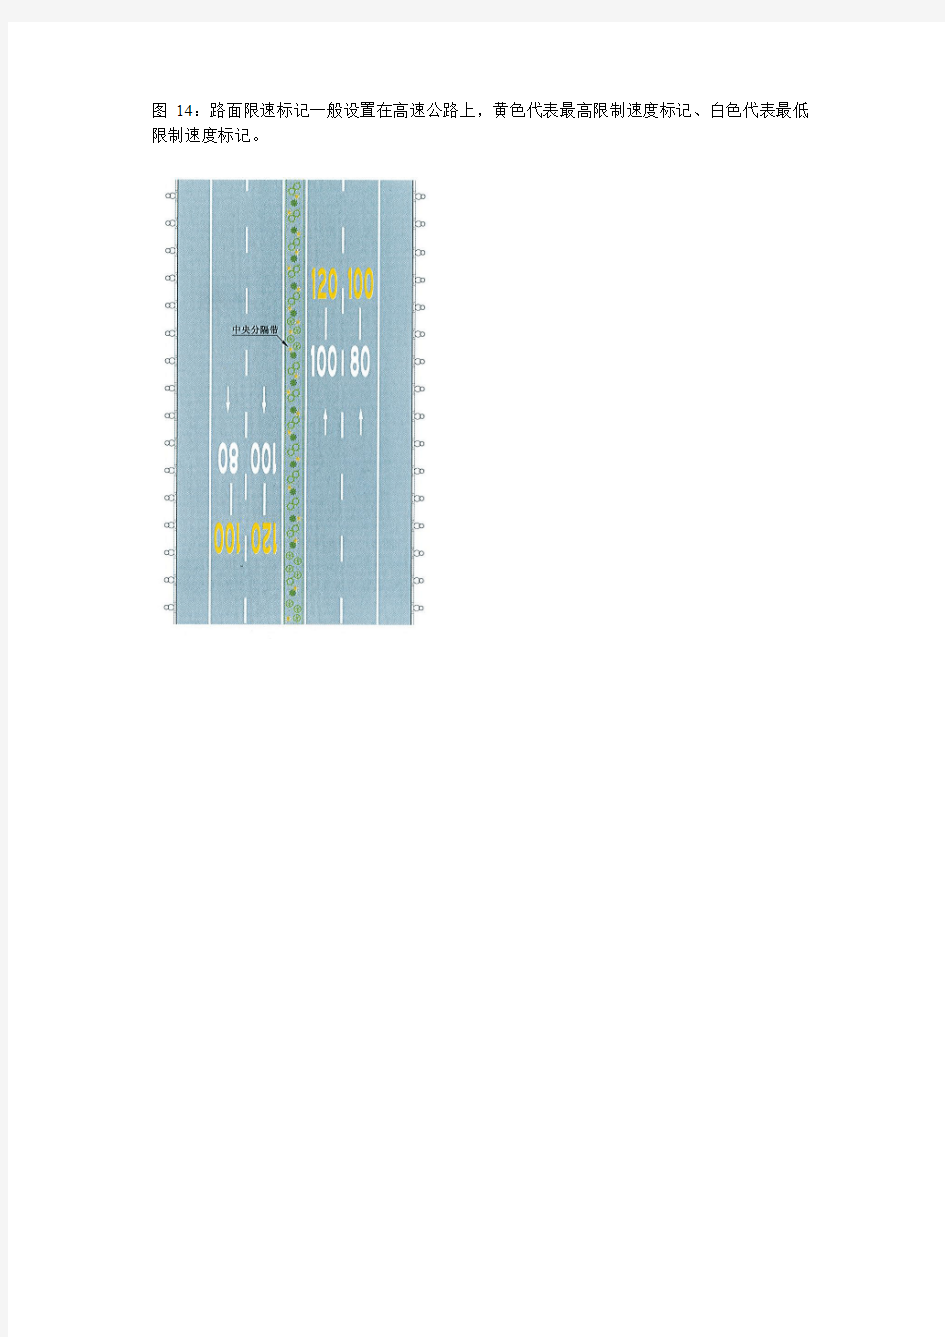 图14路面限速标记一般设置在高速公路上,黄色代表最高